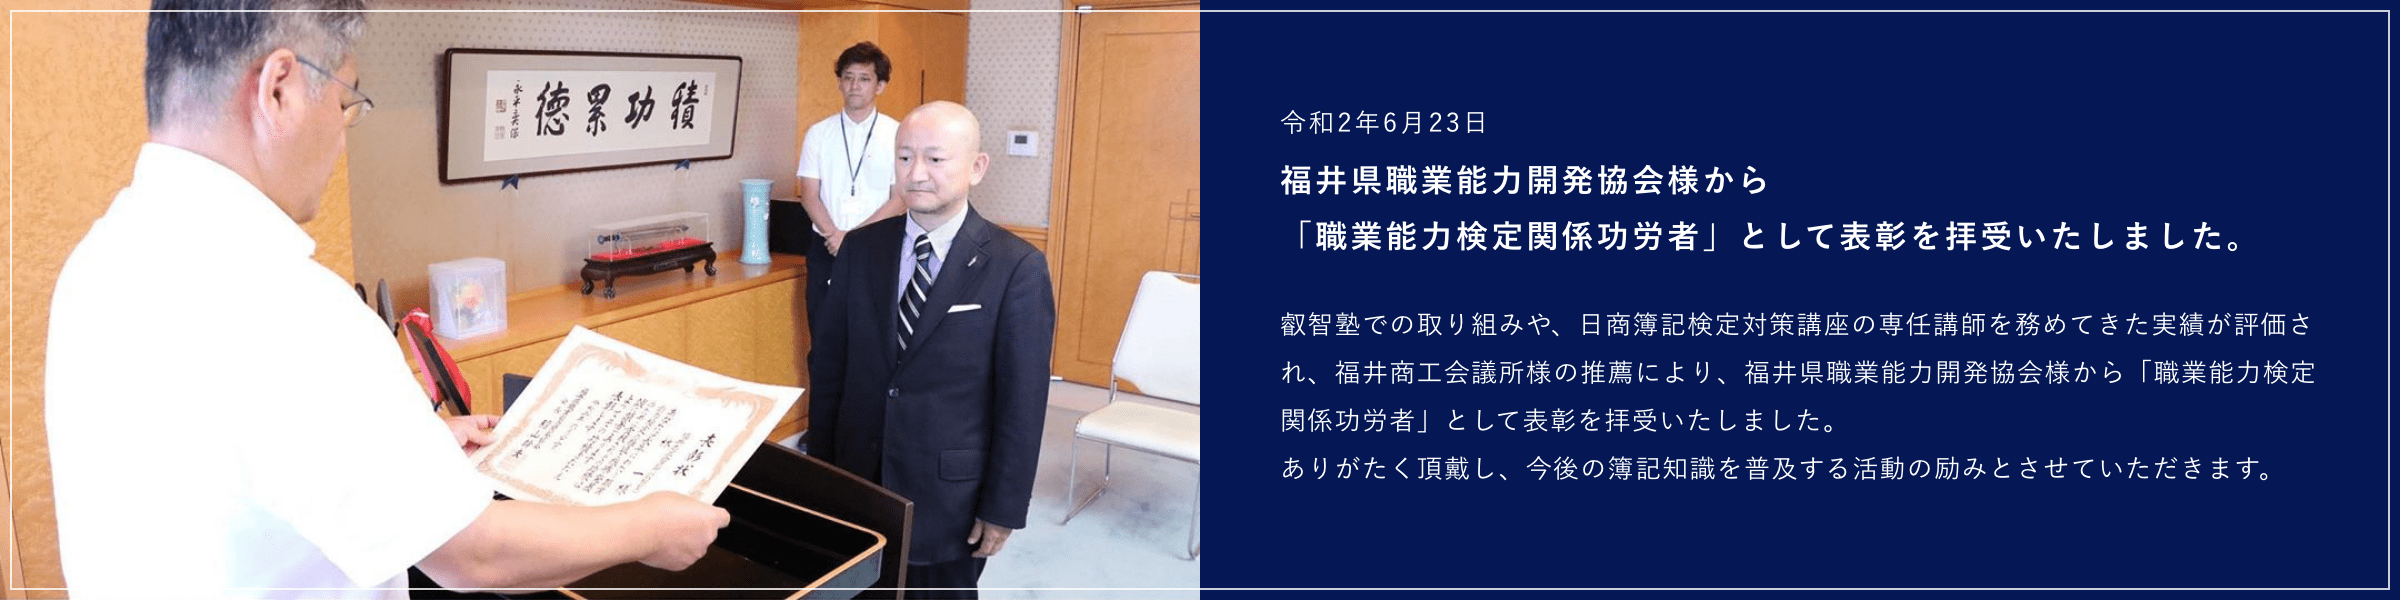 福井県職業能力開発協会様から「職業能力検定関係功労者」として表彰を拝受いたしました。